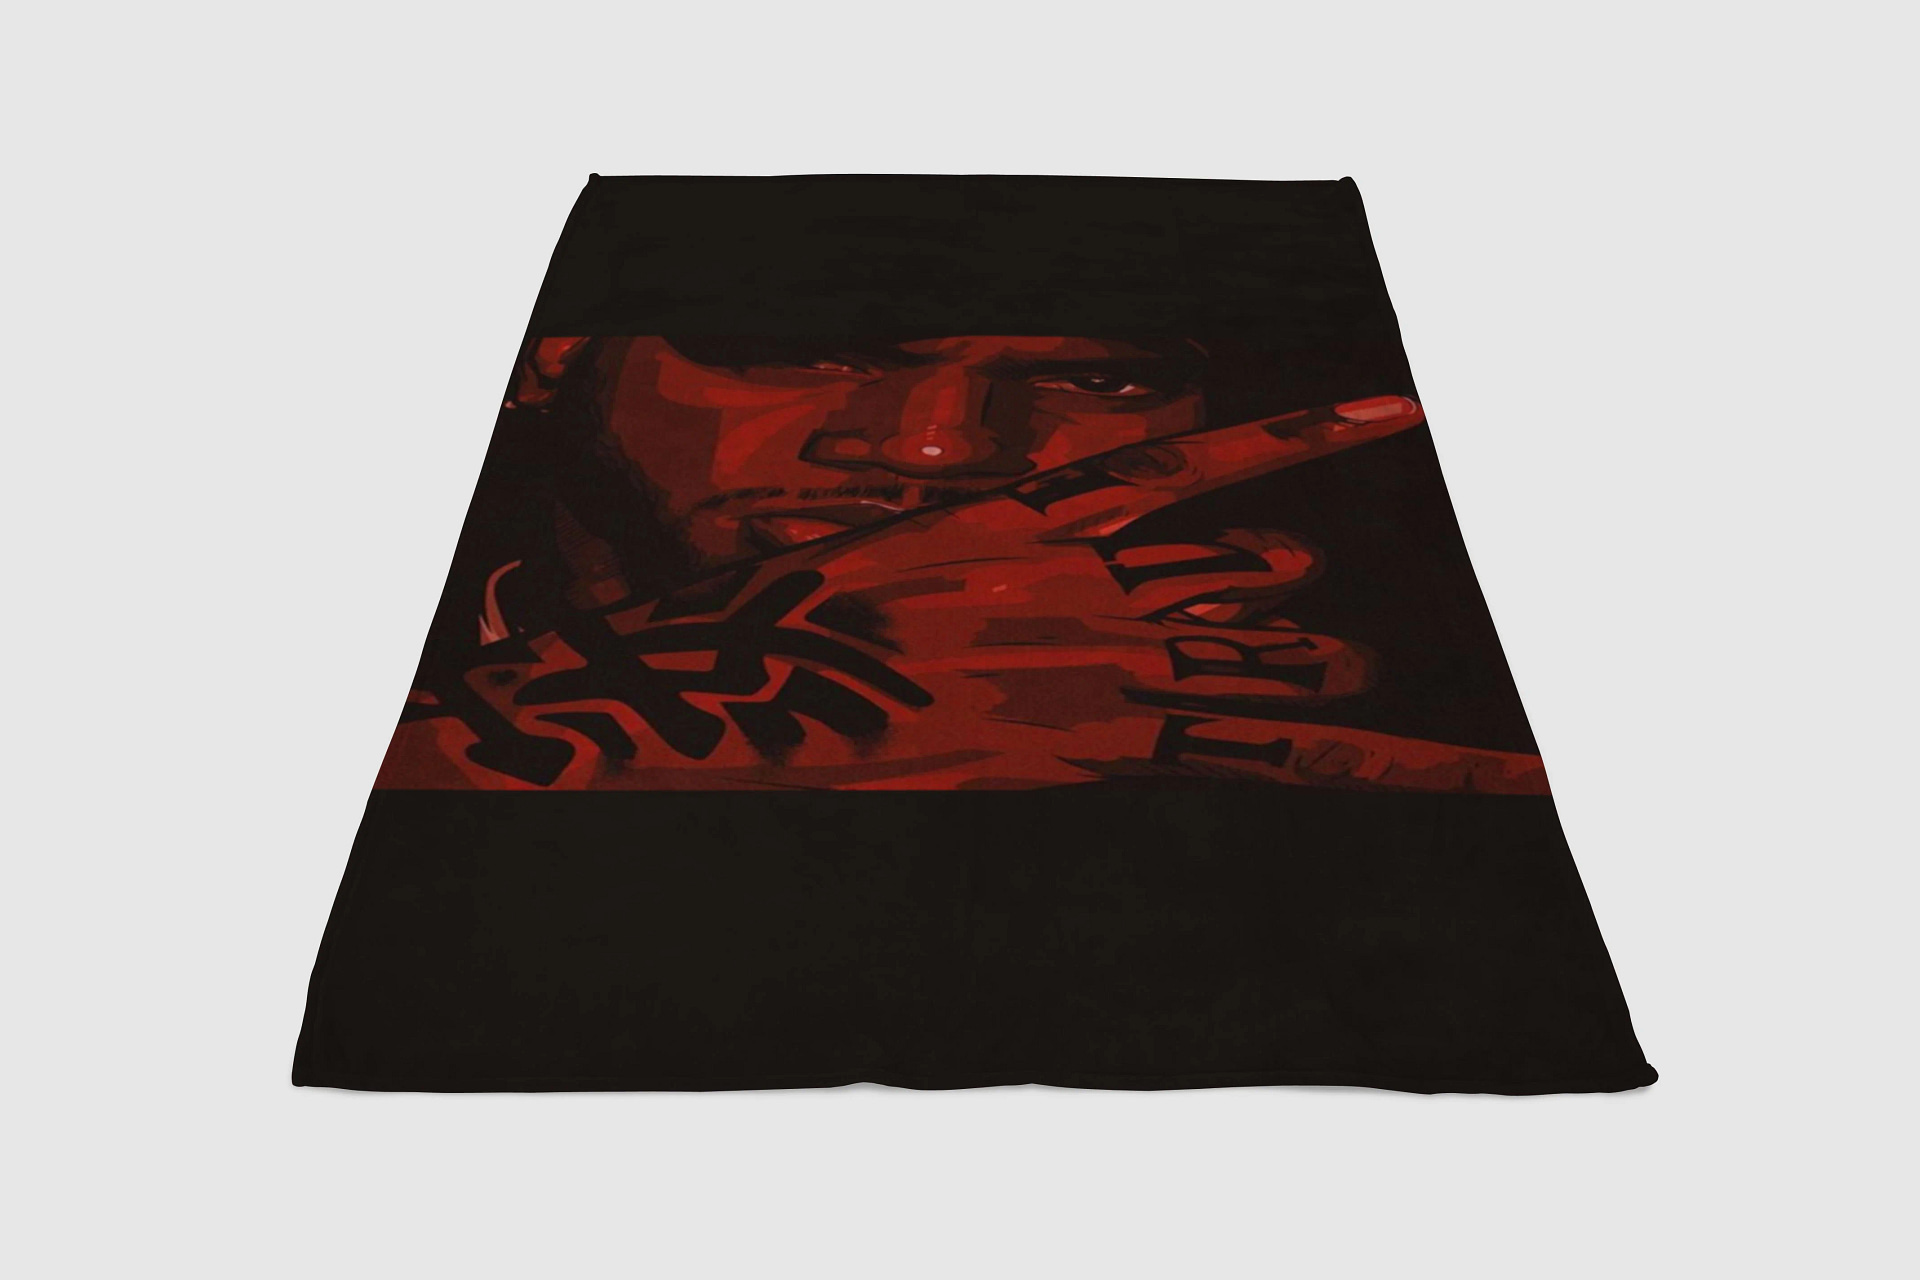 Bryson Tiller Trapsoul Artwork Fleece Blanket